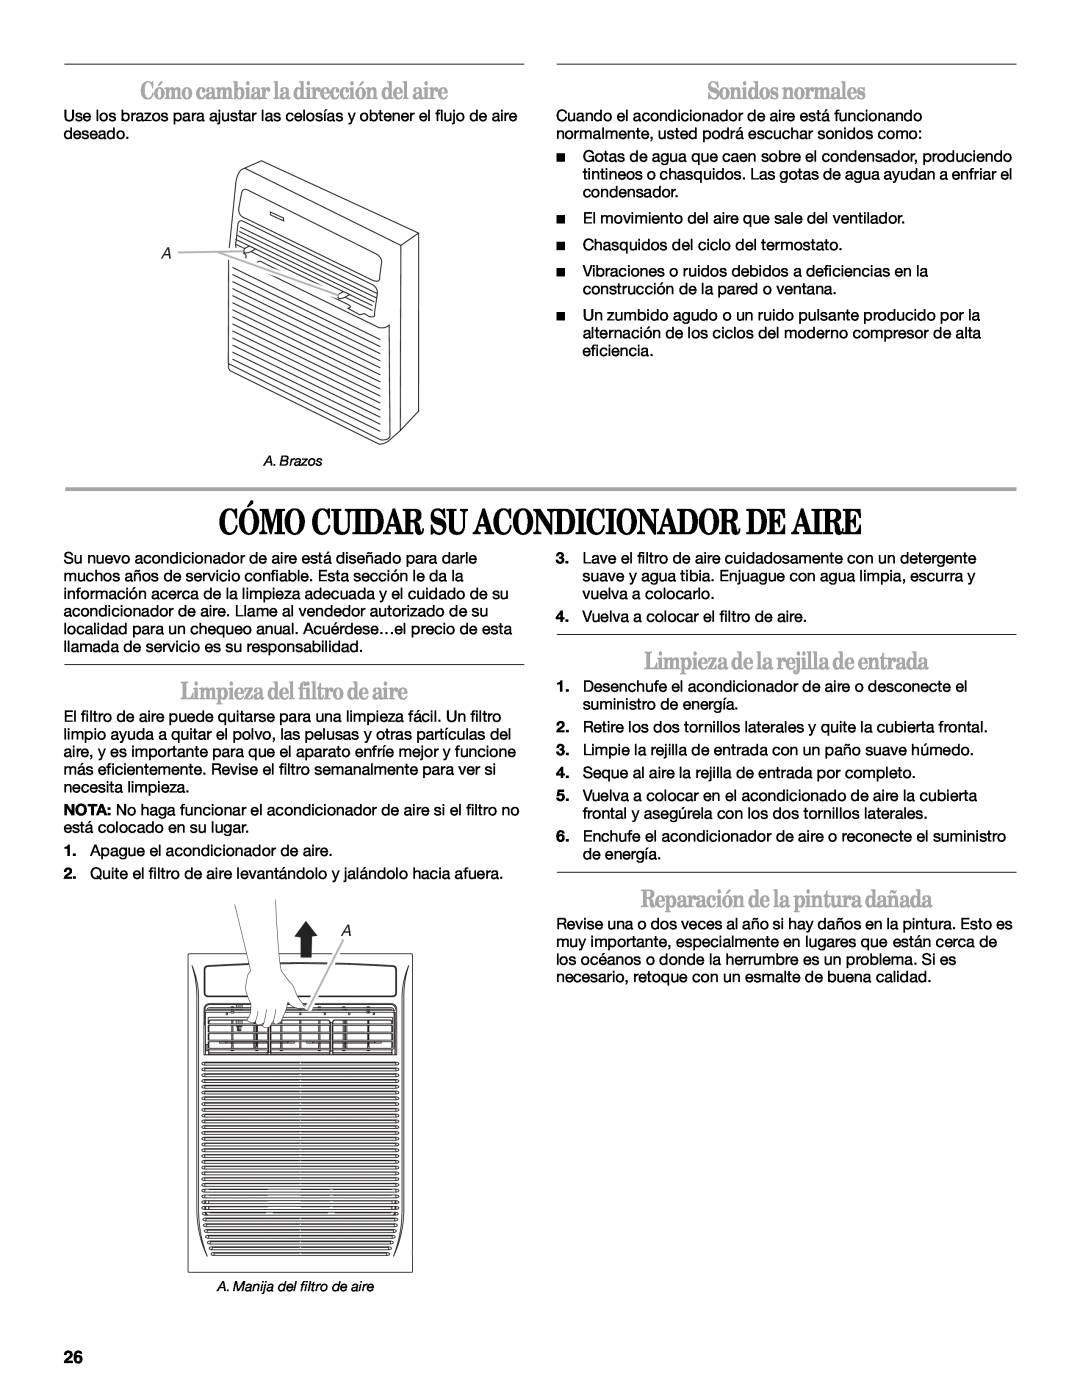 Whirlpool ACS088PR0 manual Cómo Cuidar Su Acondicionador De Aire, Cómocambiar ladireccióndelaire, Sonidosnormales 